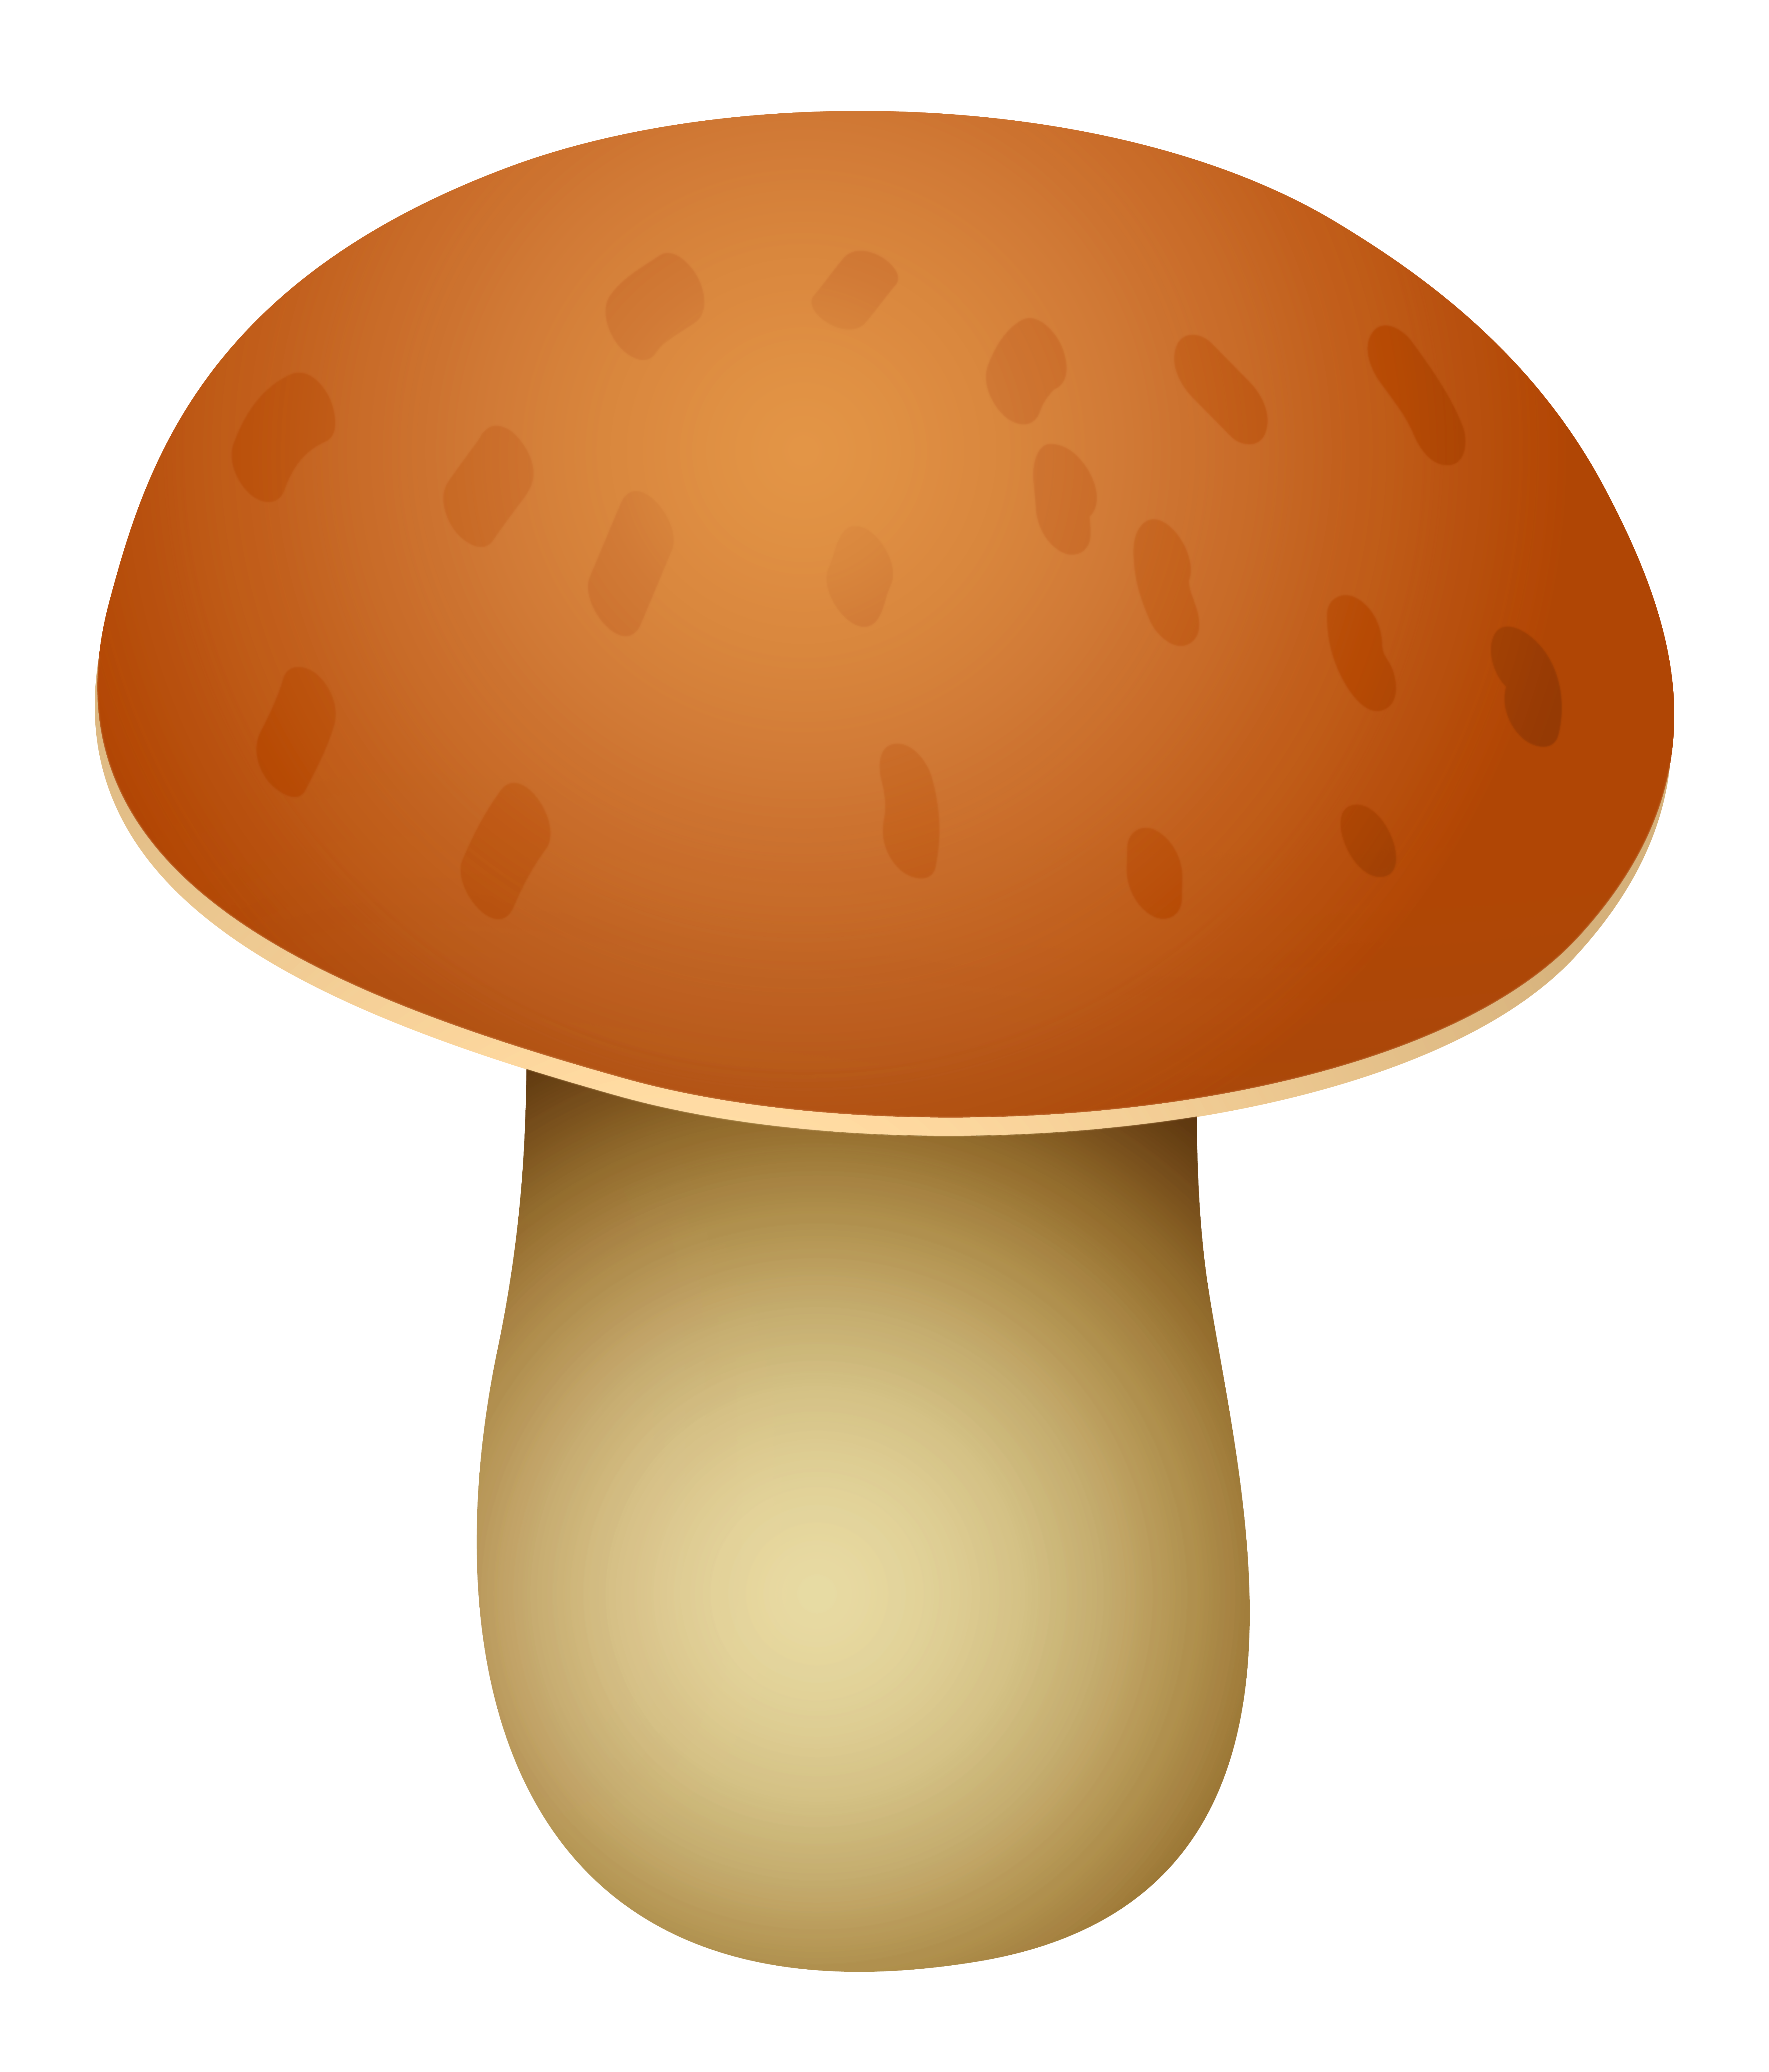 Mushroom Cartoon Drawing